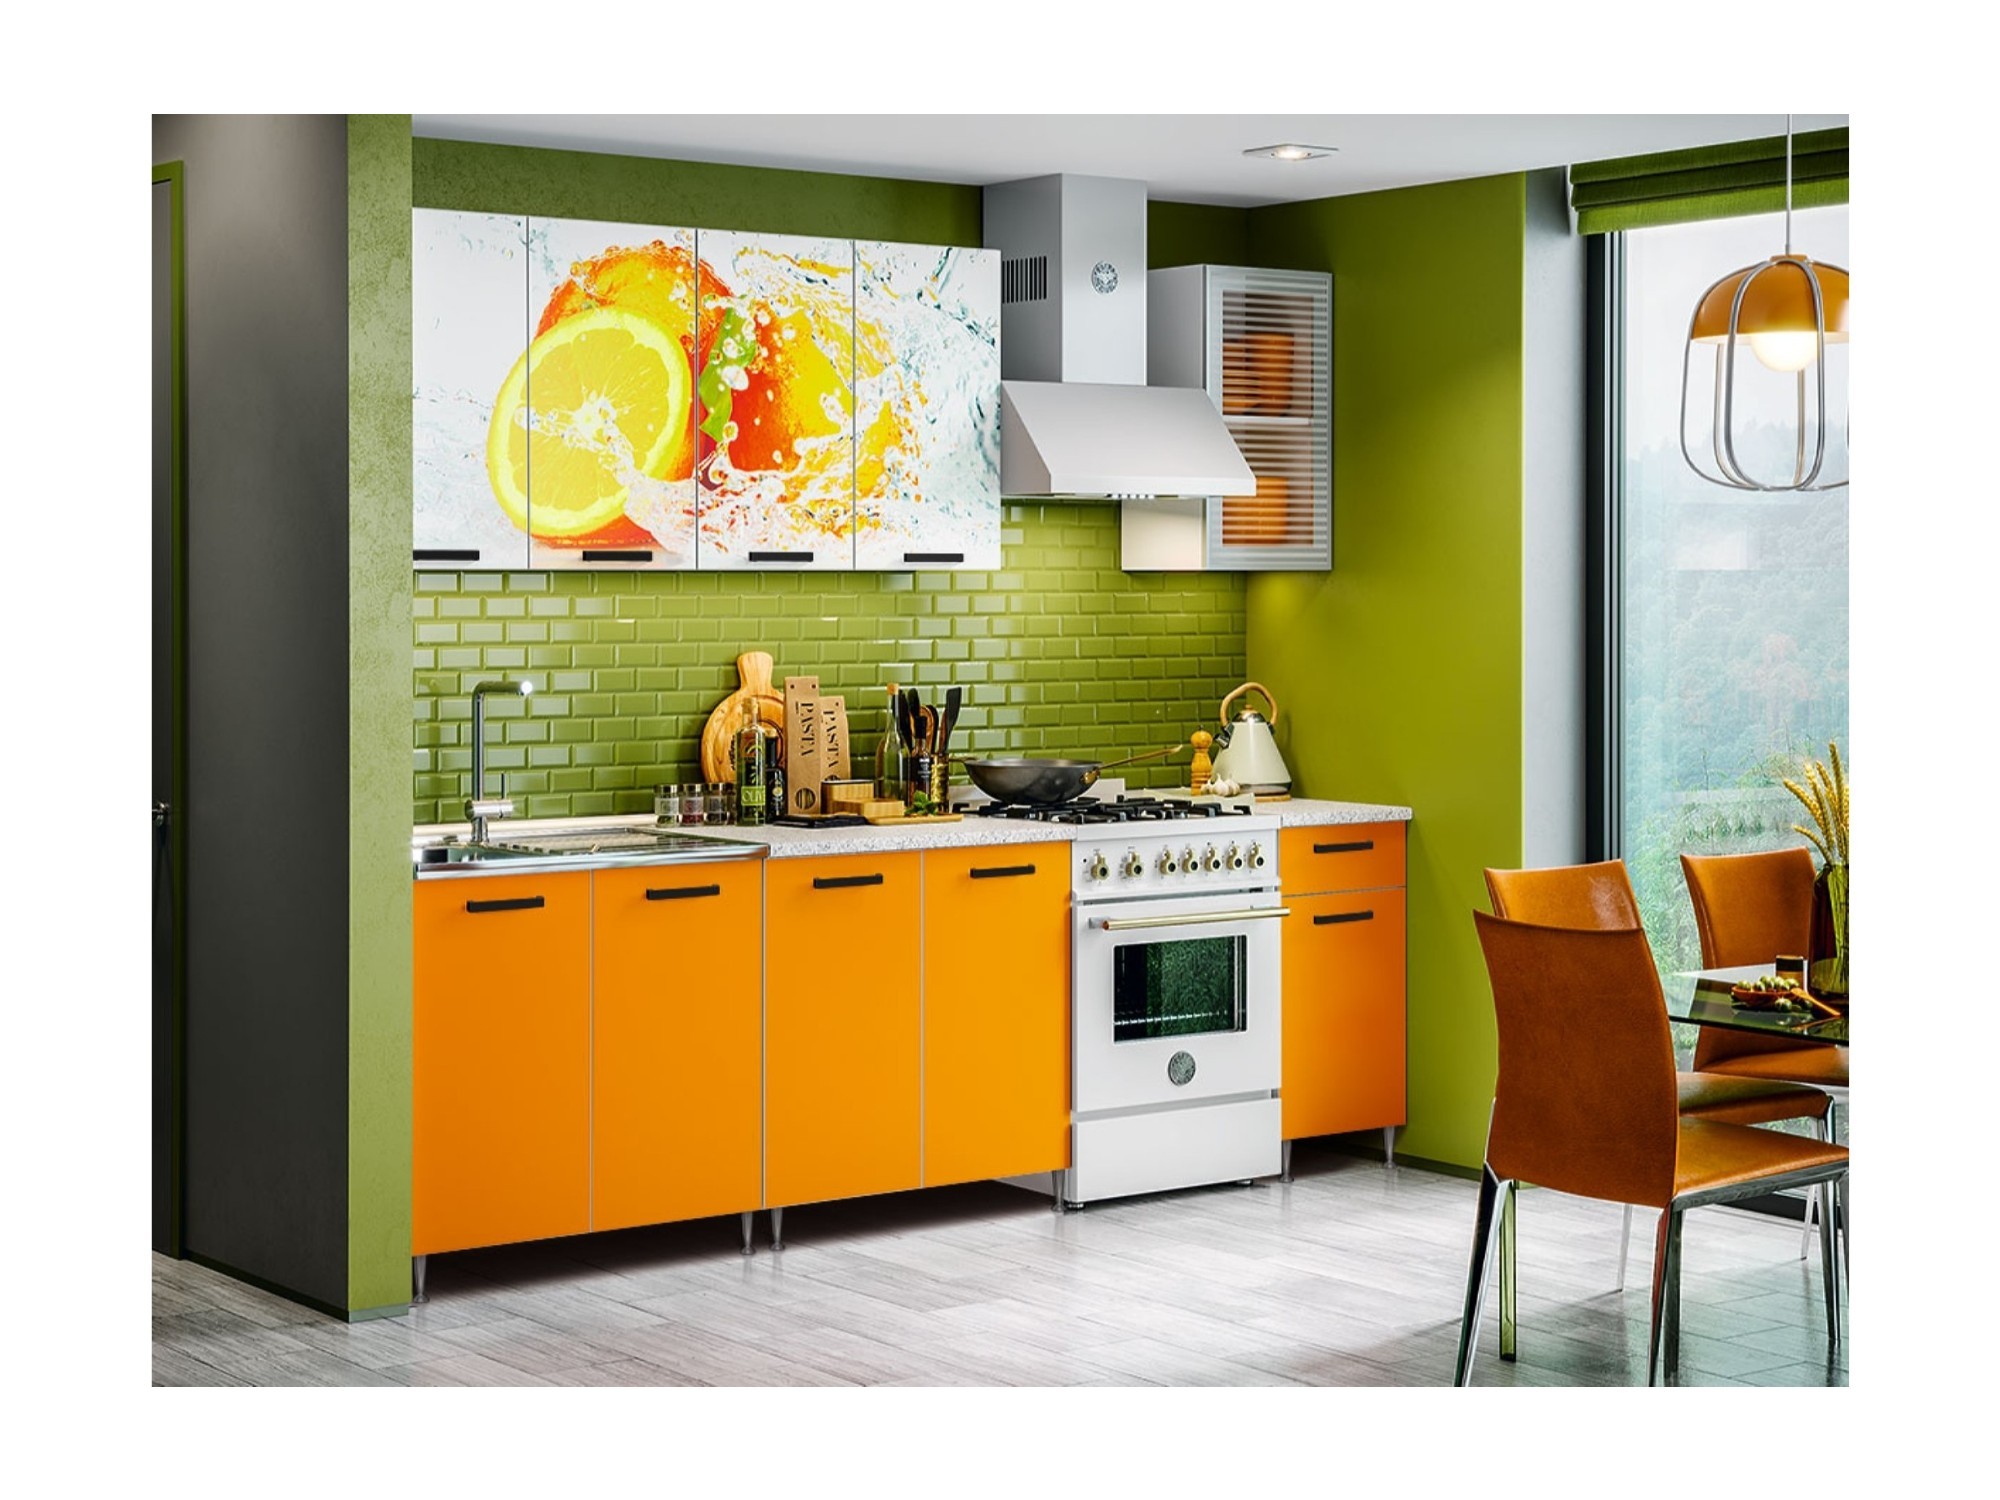 Кухня ЛДСП Рио-1 2000 с фотопечатью Апельсин, манго ЛДСП + фотопечать, ЛДСП кухонный гарнитур рио 1 2000 мм лдсп цвет манго фотопечать апельсин